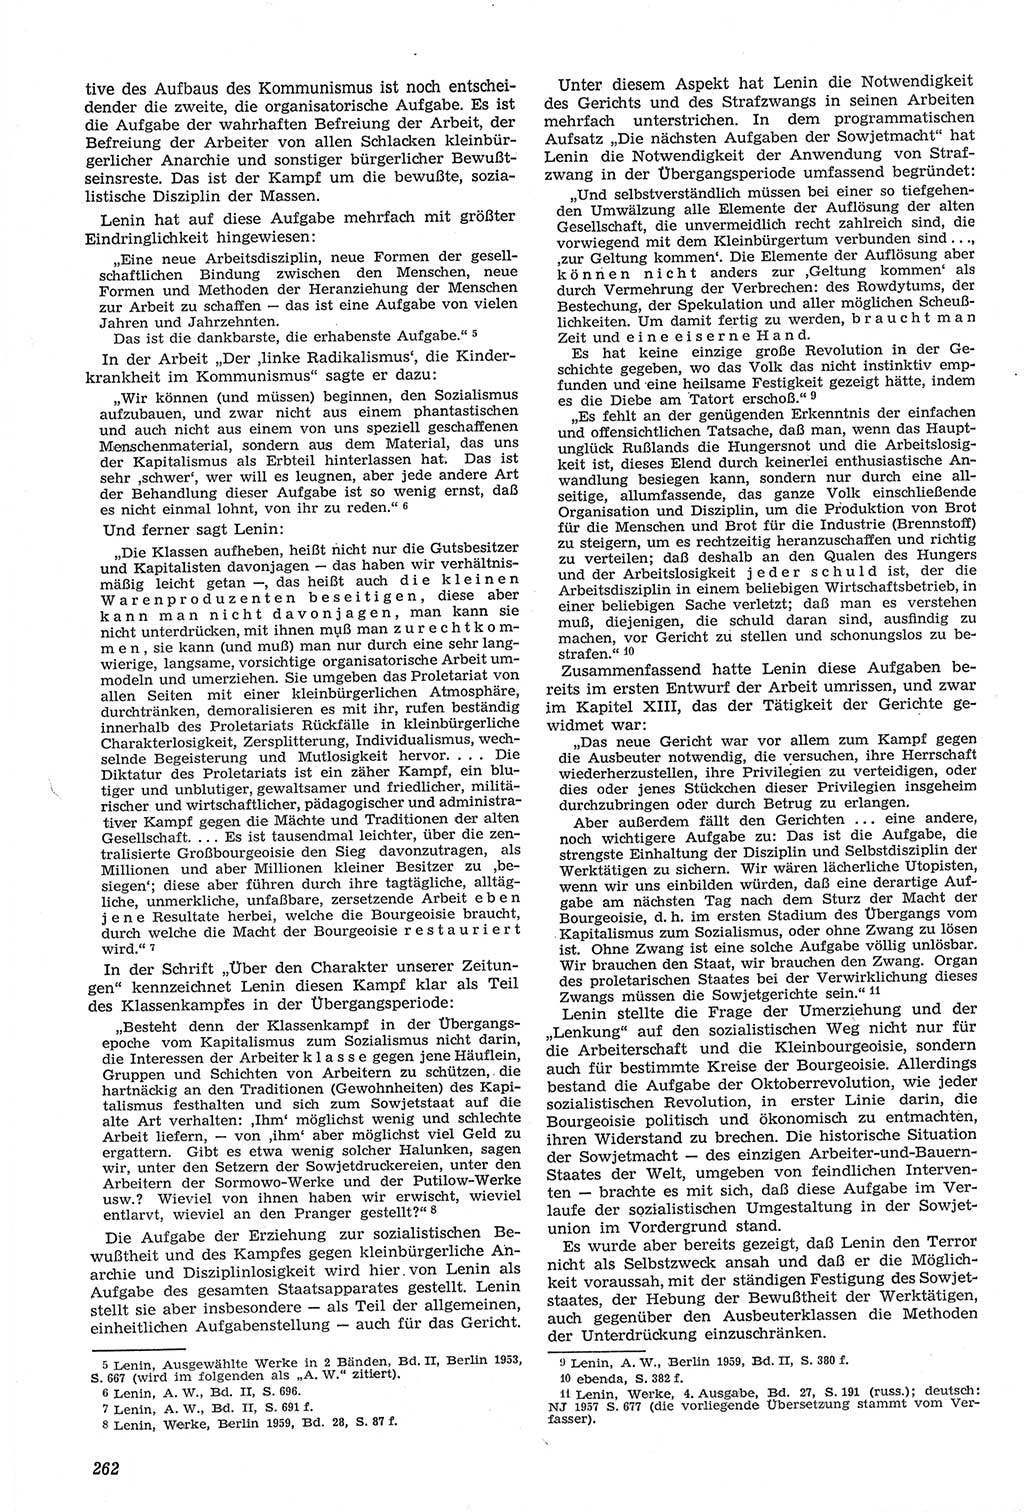 Neue Justiz (NJ), Zeitschrift für Recht und Rechtswissenschaft [Deutsche Demokratische Republik (DDR)], 14. Jahrgang 1960, Seite 262 (NJ DDR 1960, S. 262)